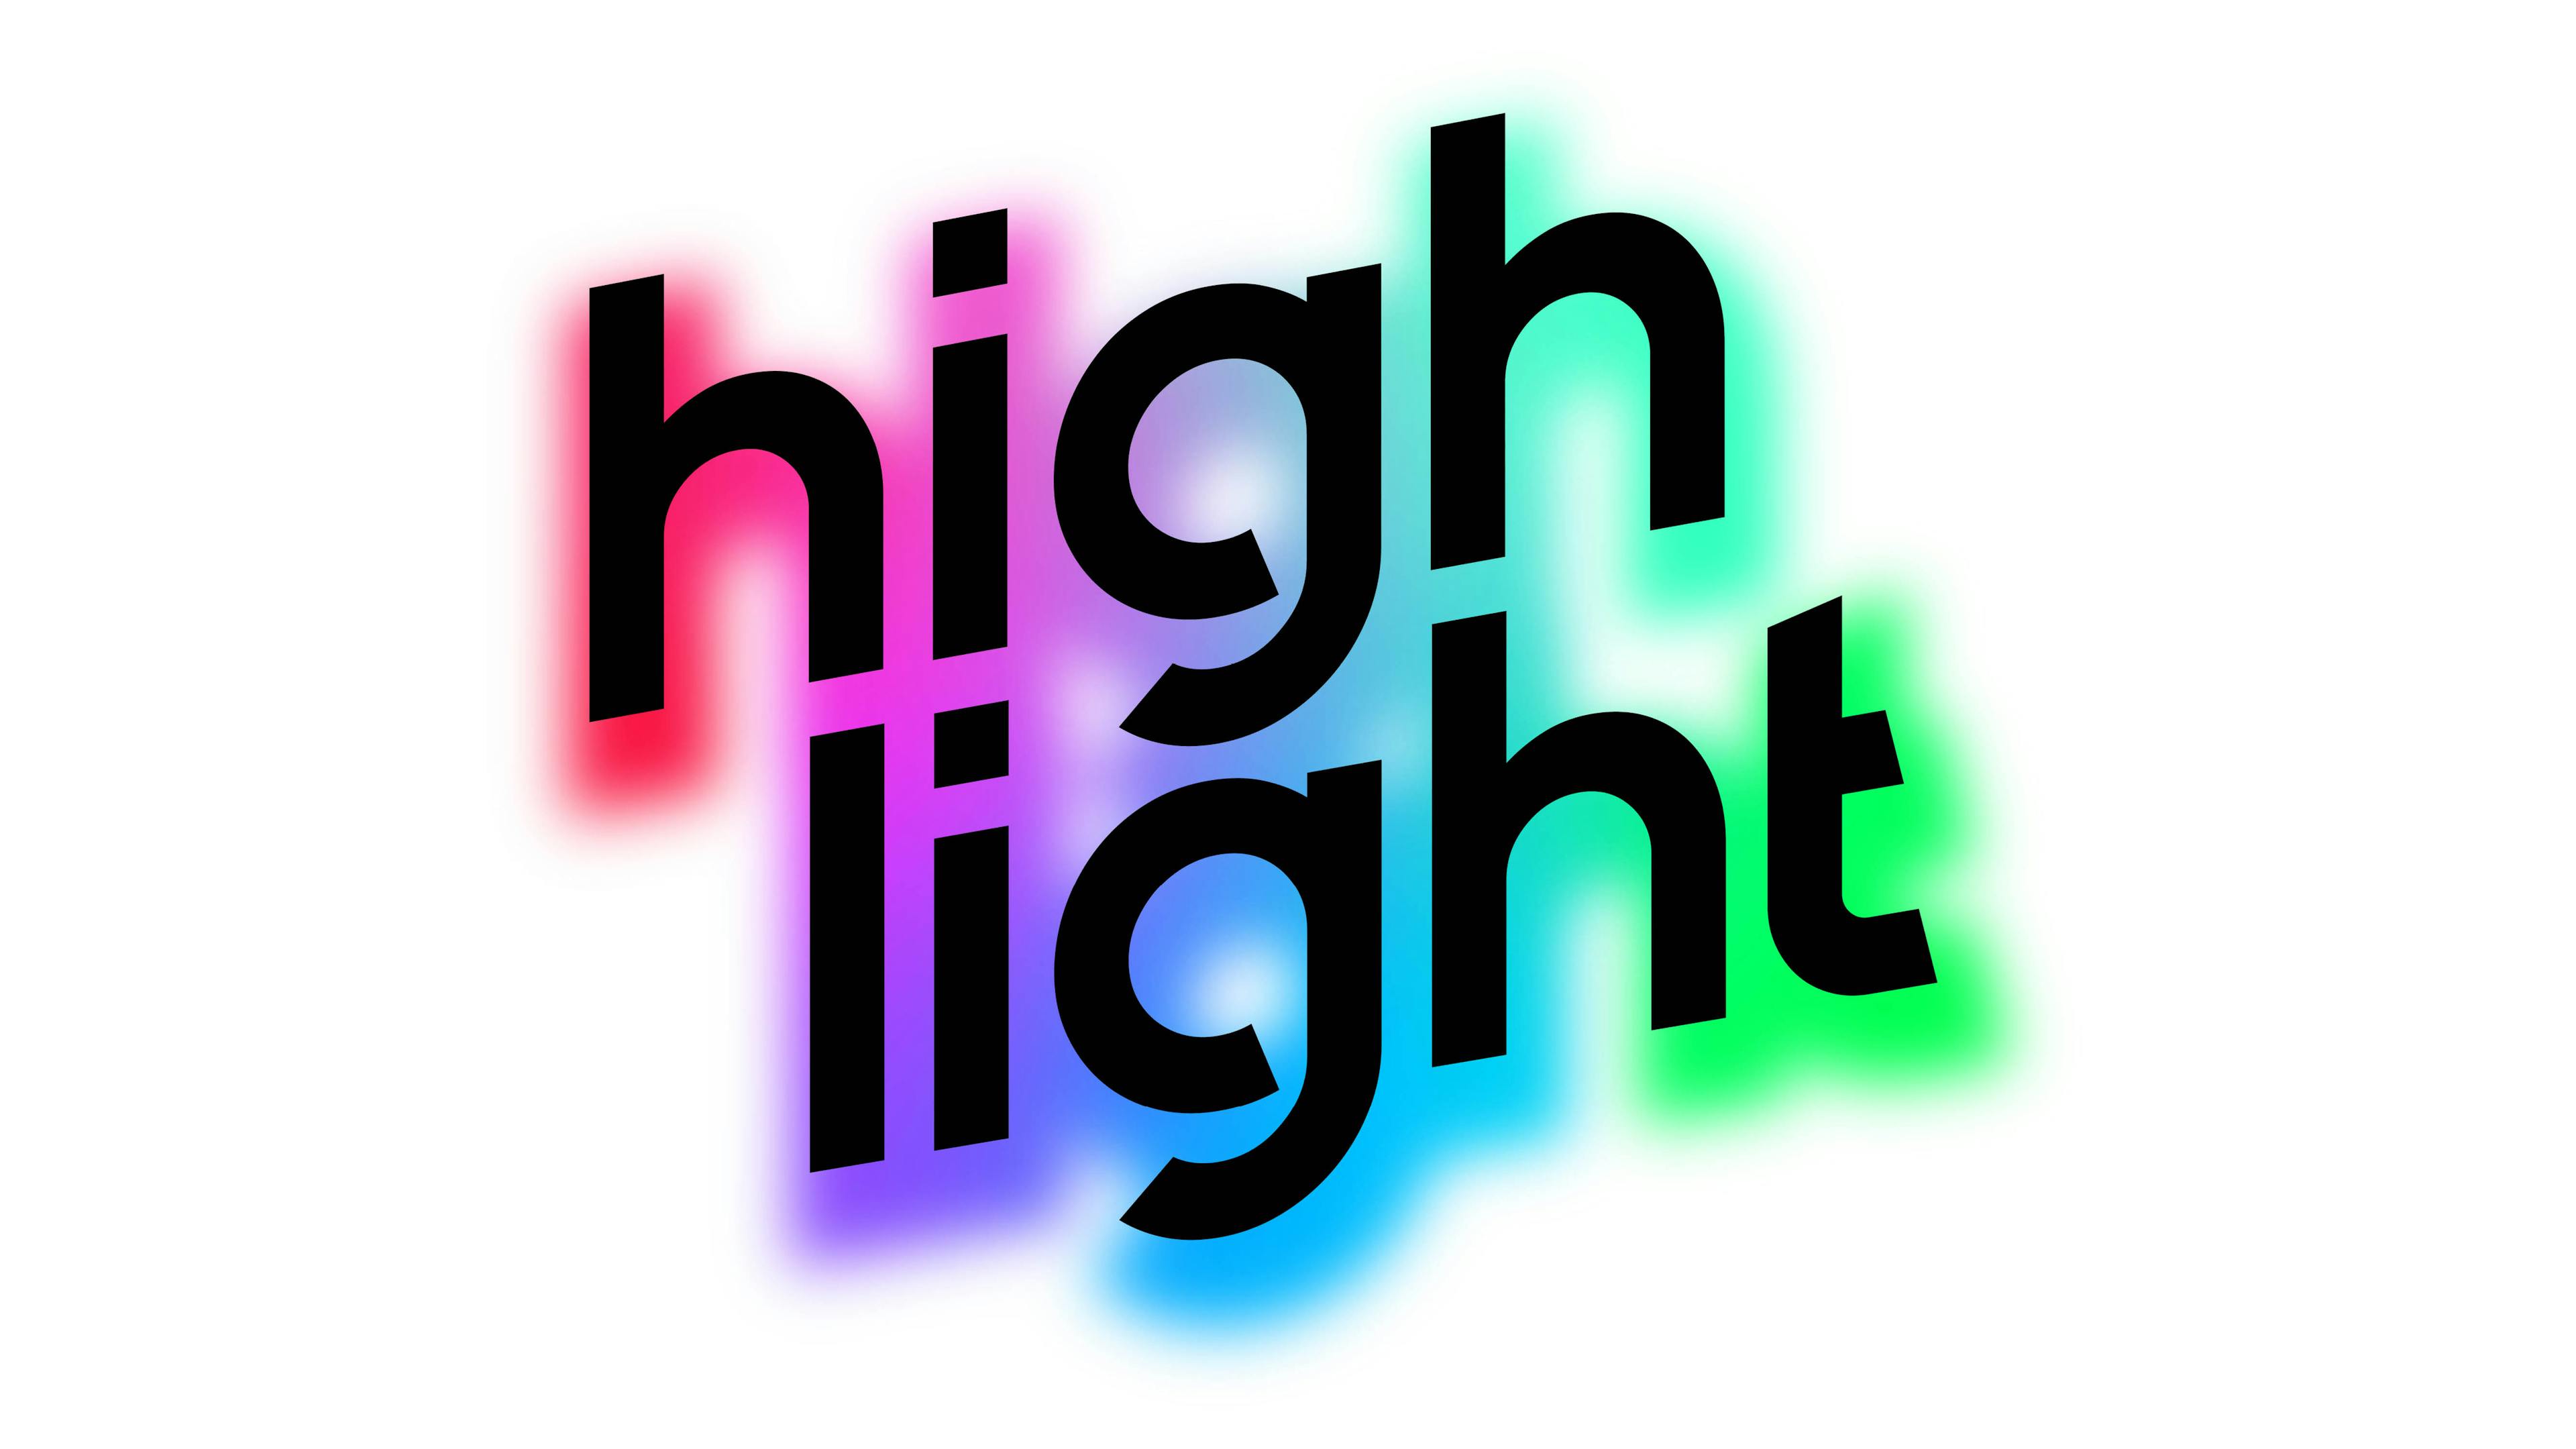 HighLight: Carnival of Lights logo